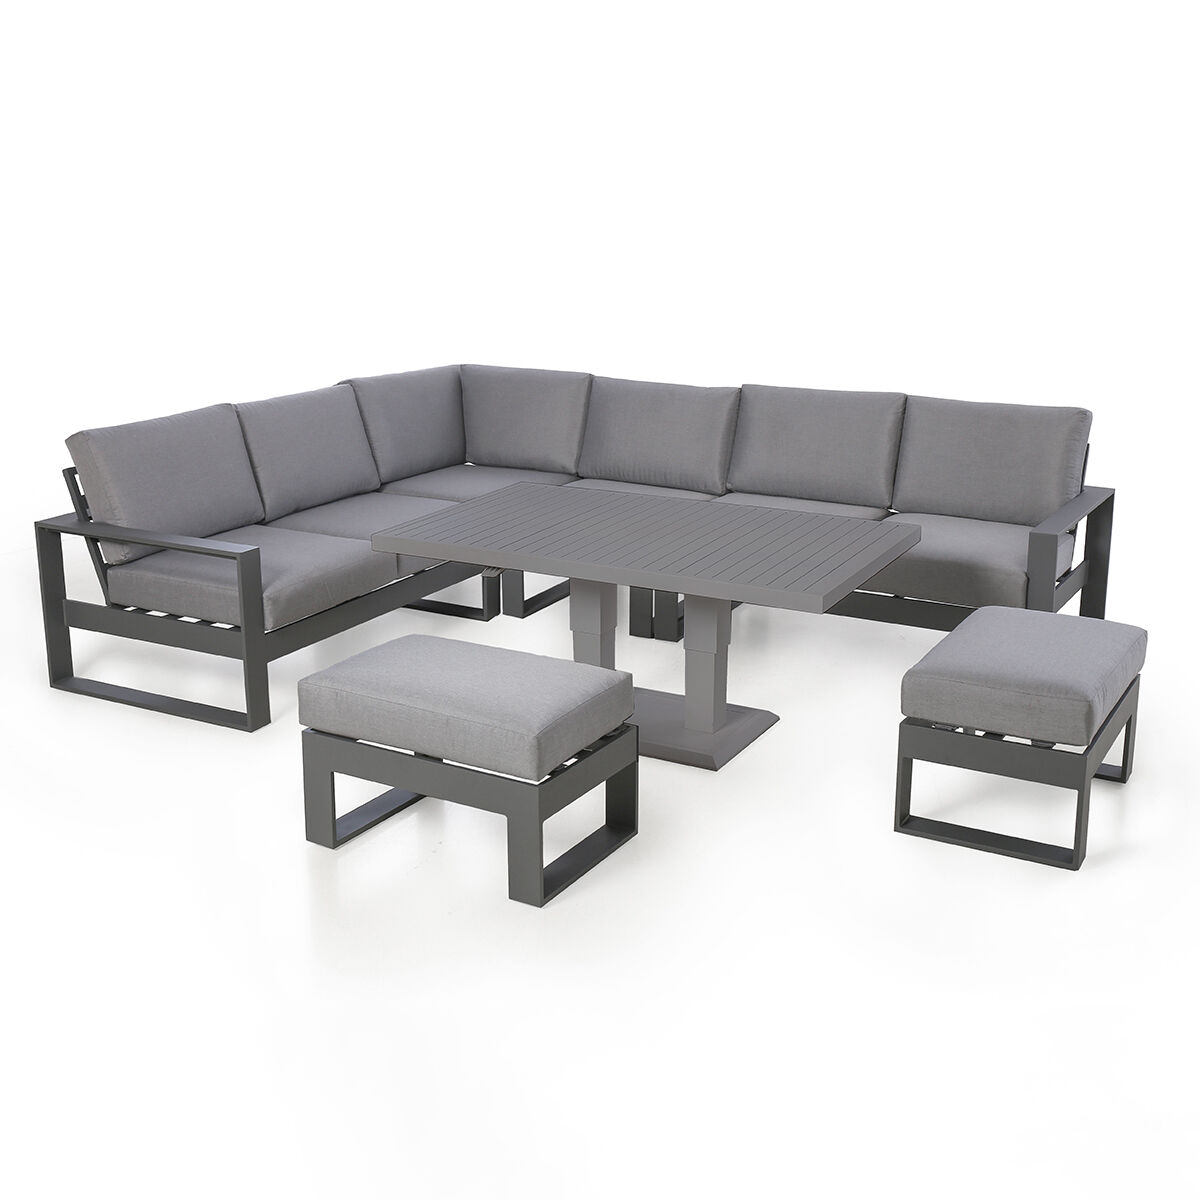 Maze - Amalfi Large Aluminium Corner Dining Set with Rising Table & Footstools - Grey product image